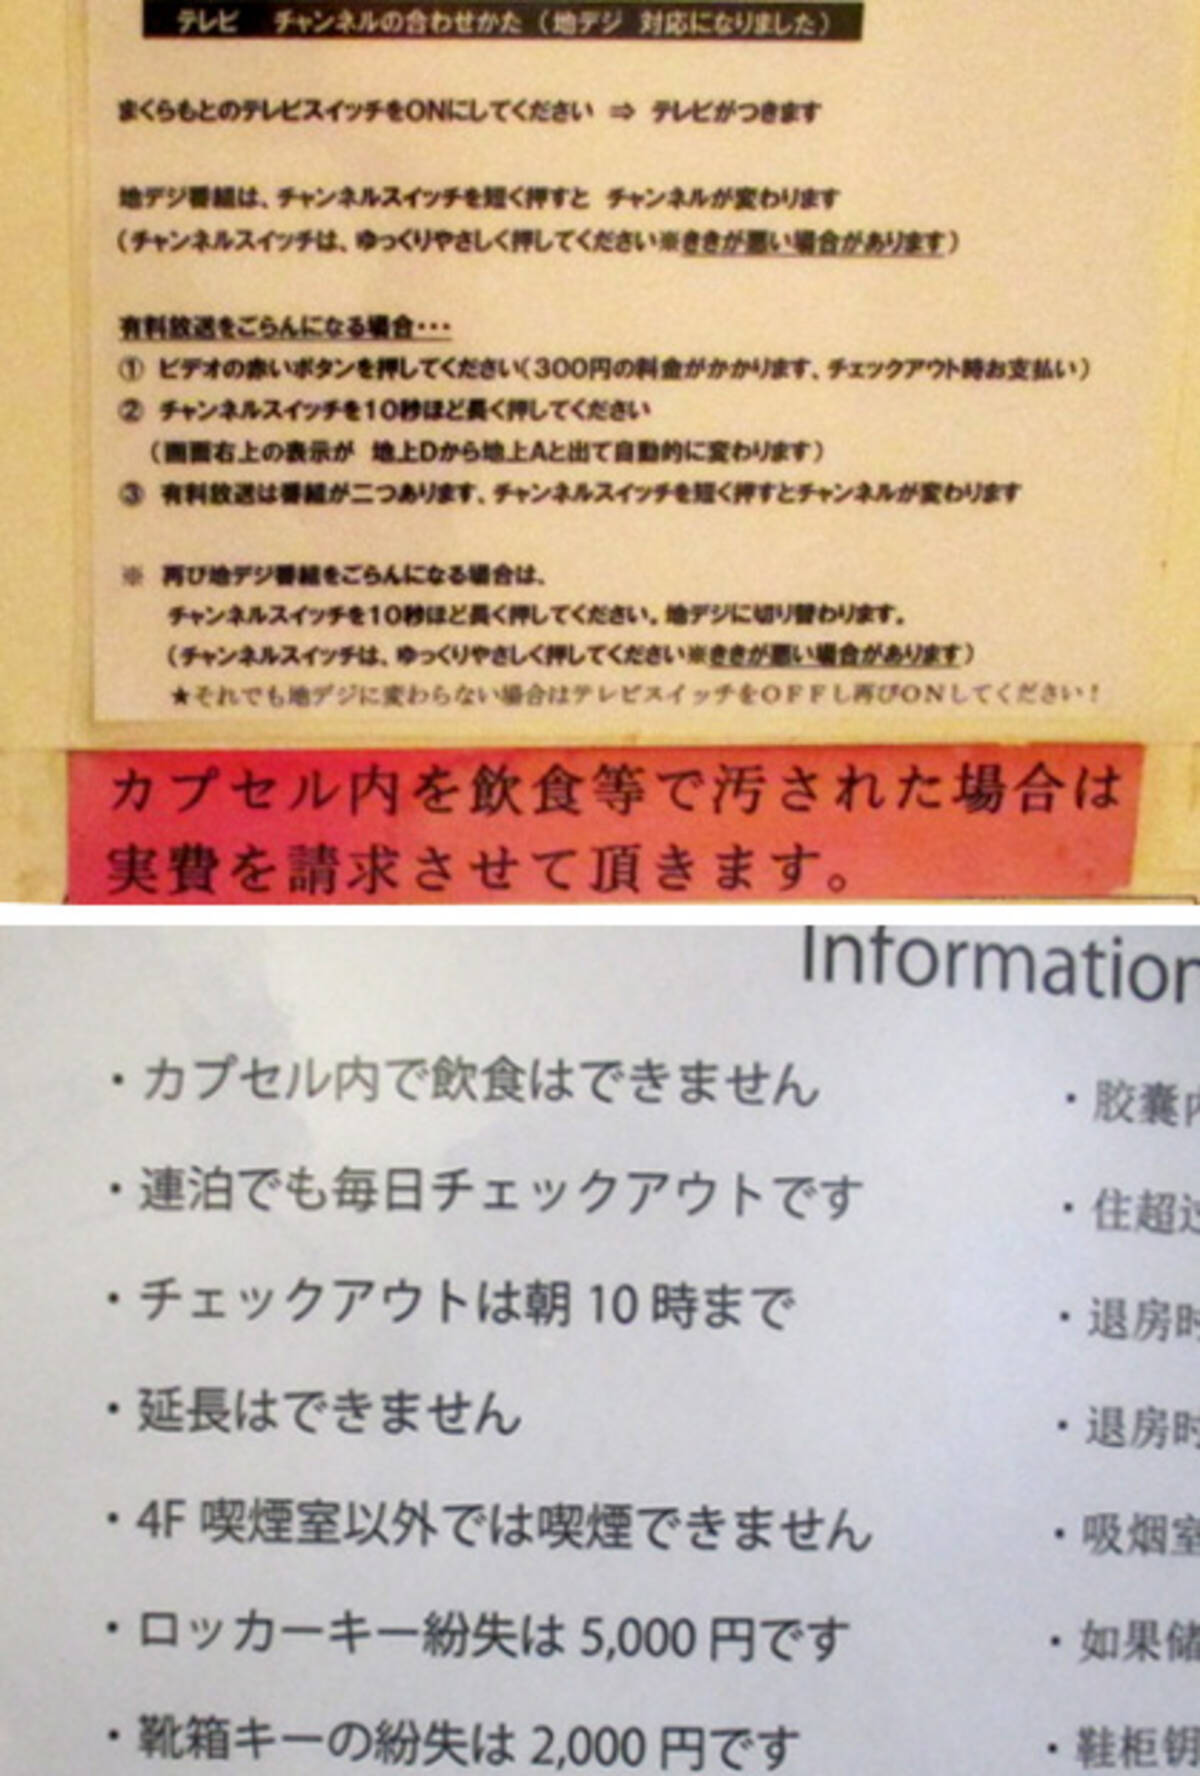 日本独自の文化 カプセルホテルでトンデモナイ 注意書き が急増中 17年5月9日 エキサイトニュース